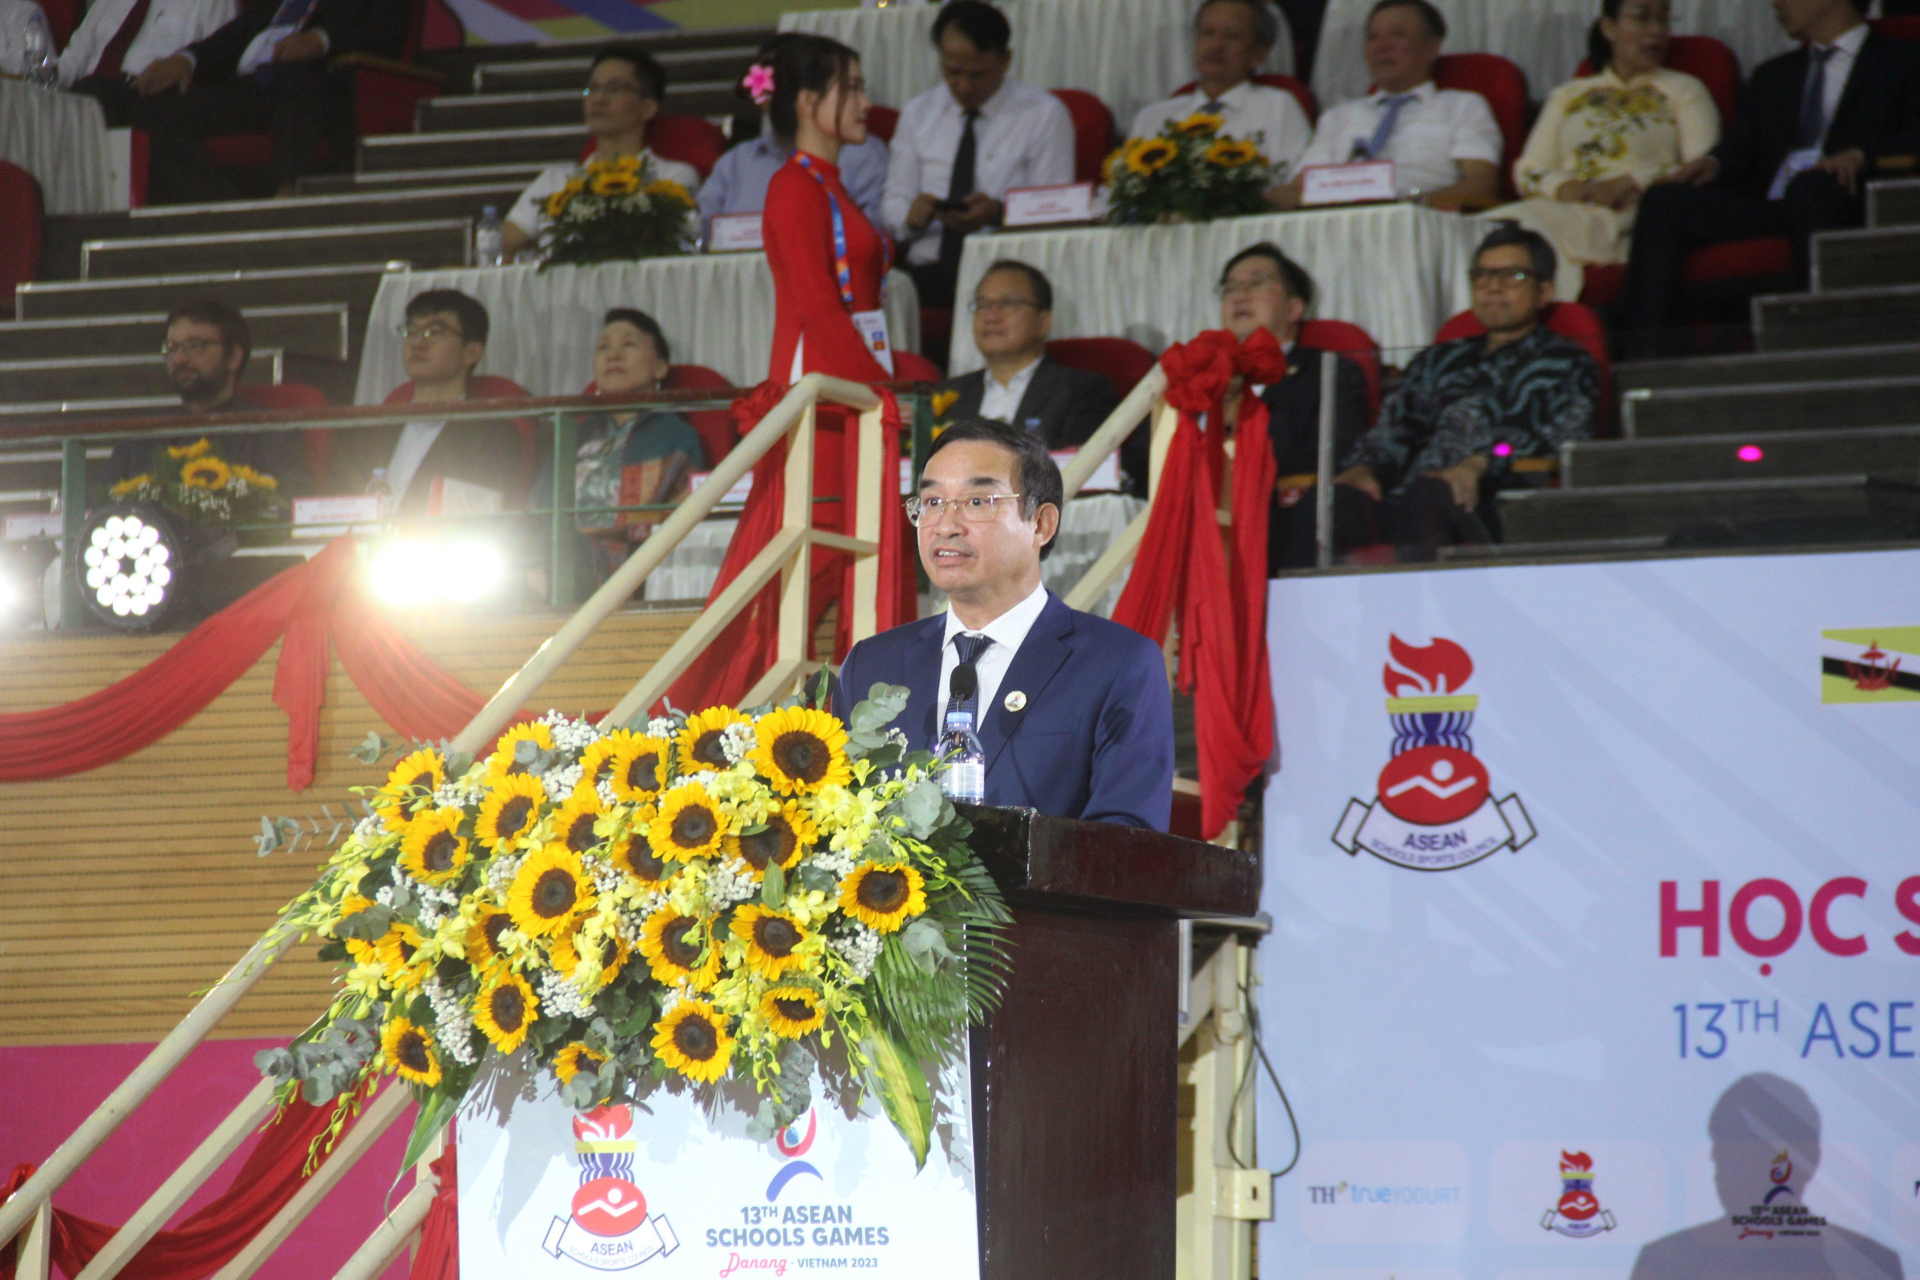 Chủ tịch UBND thành phố Đà Nẵng Lê Trung Chinh cho biết, thành phố Đà Nẵng đã phối hợp chặt chẽ với Ban, Bộ, Ngành Trung ương để triển khai mọi công tác chuẩn bị, sẵn sàng cho cuộc tranh tài của các đoàn vận động viên thể thao học sinh.